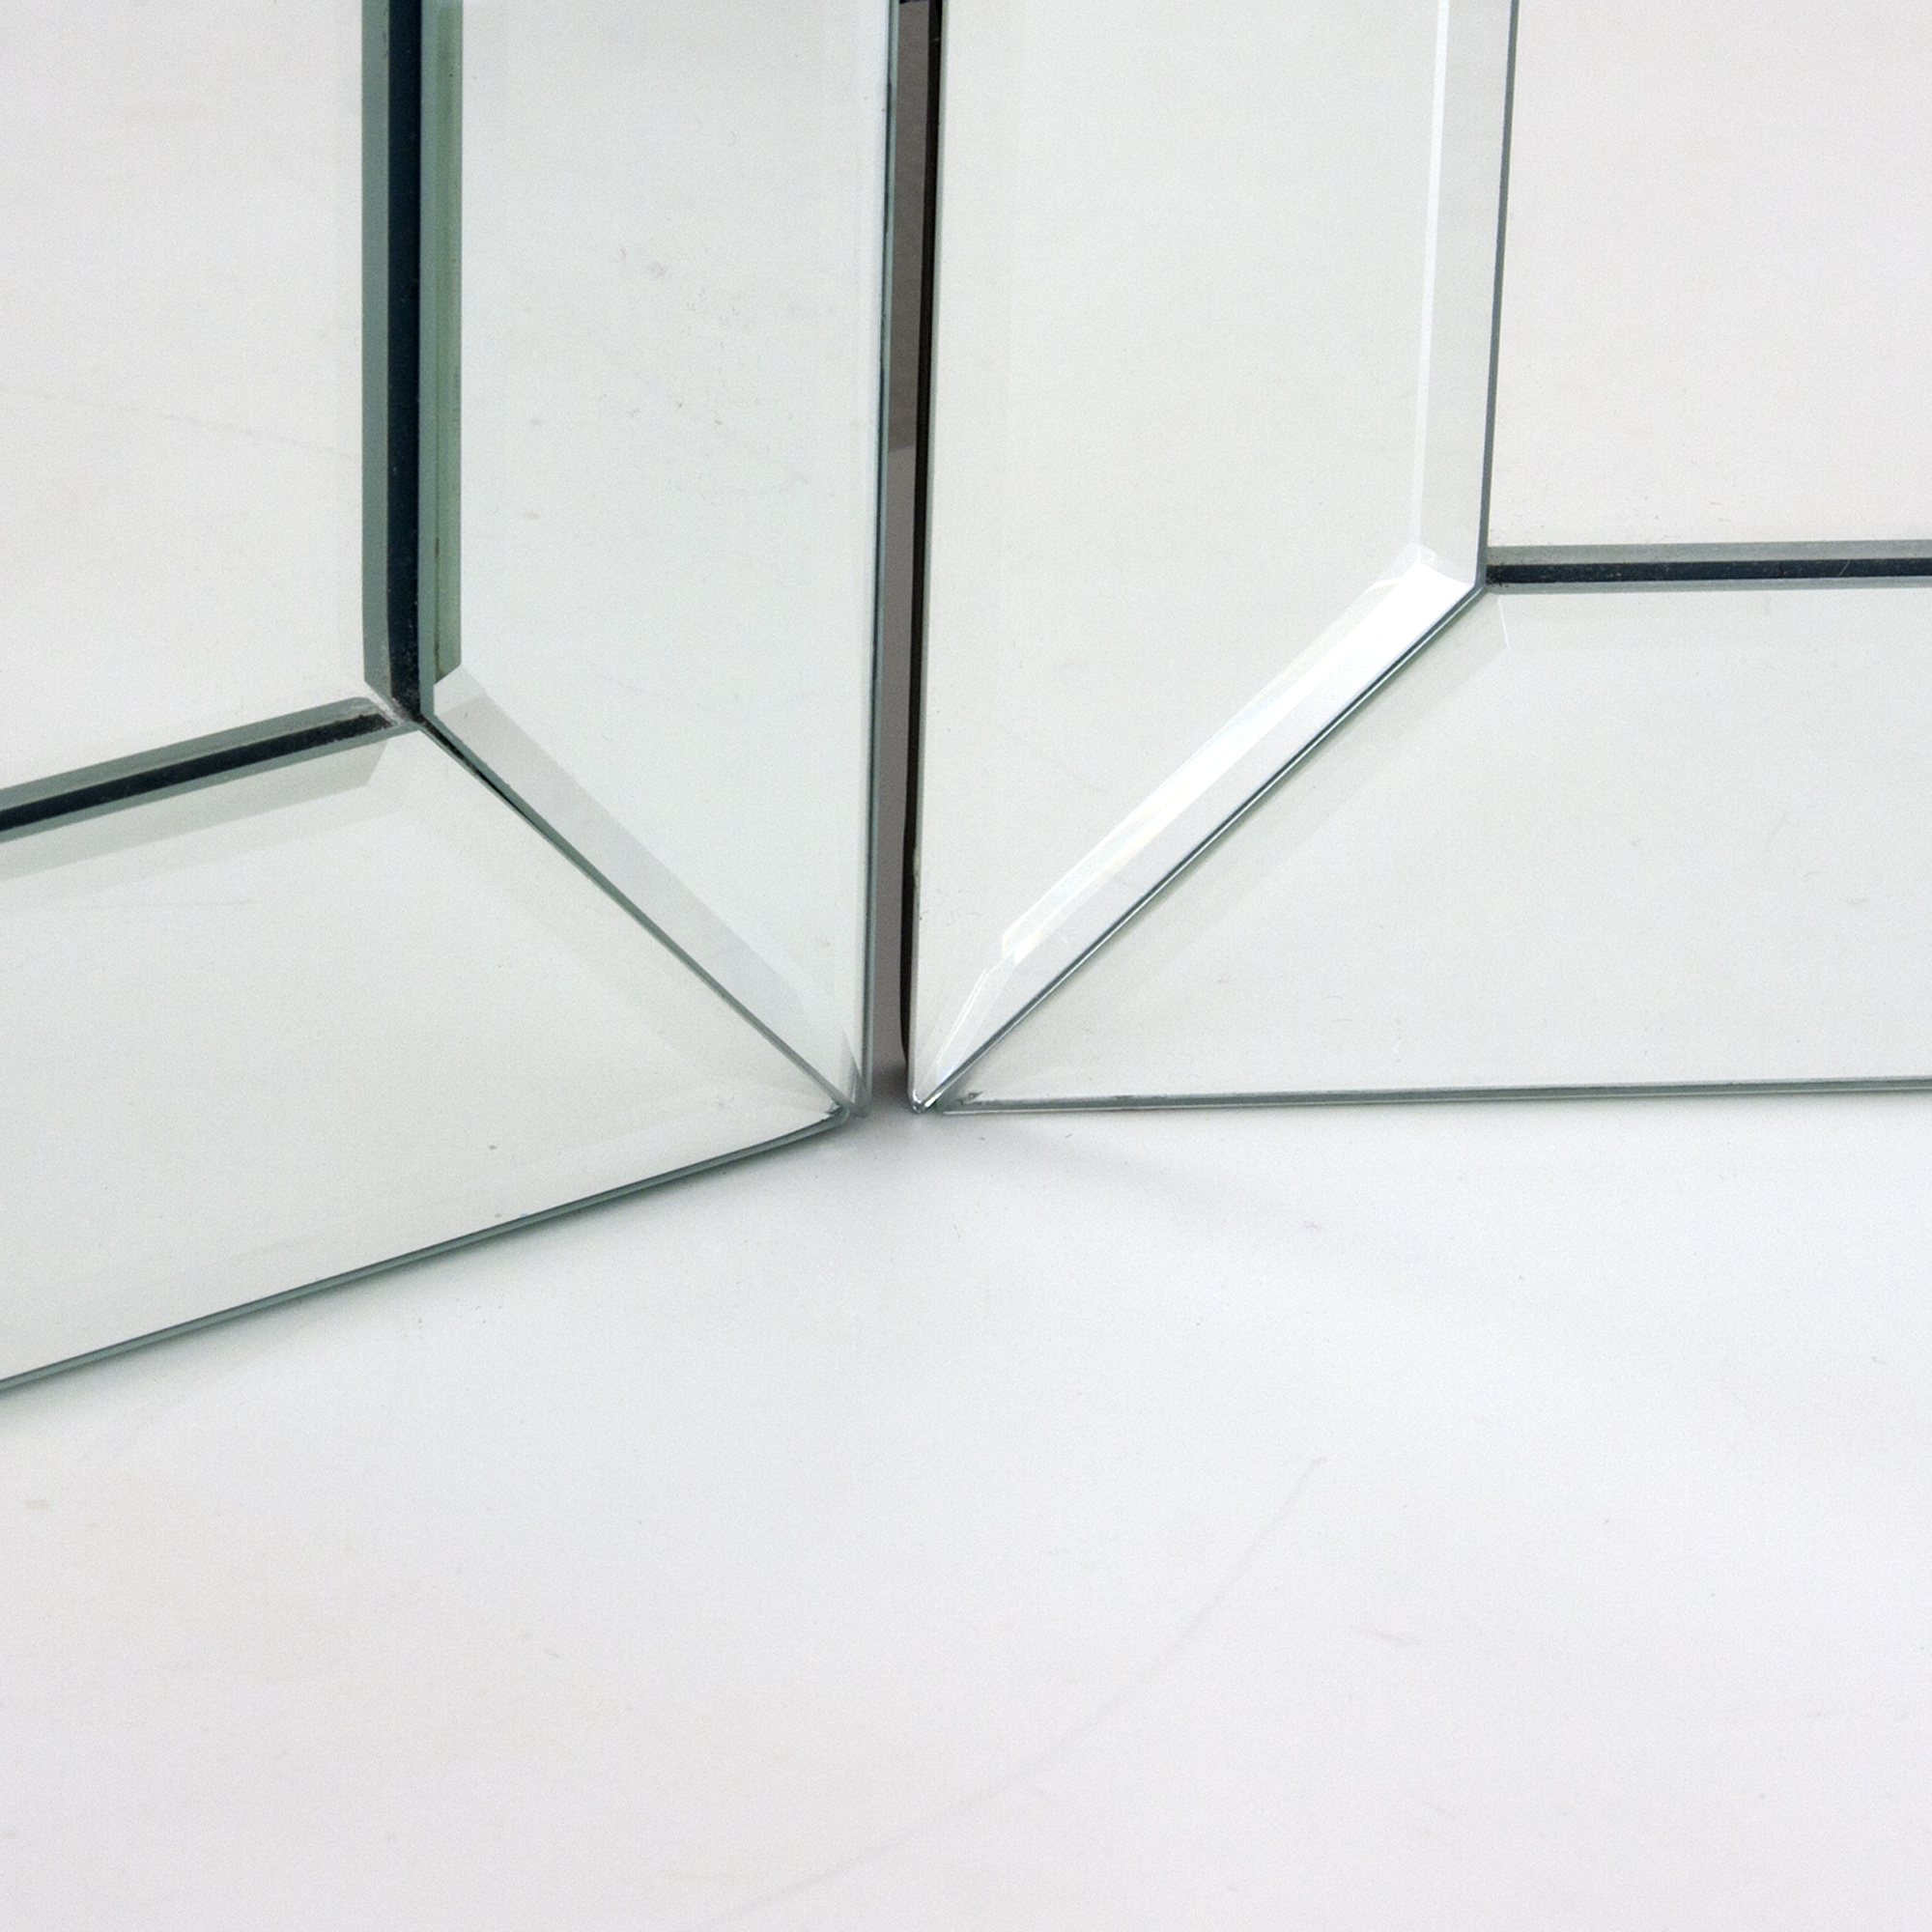 Mirror Bevel Strips Aqua Shower Doors